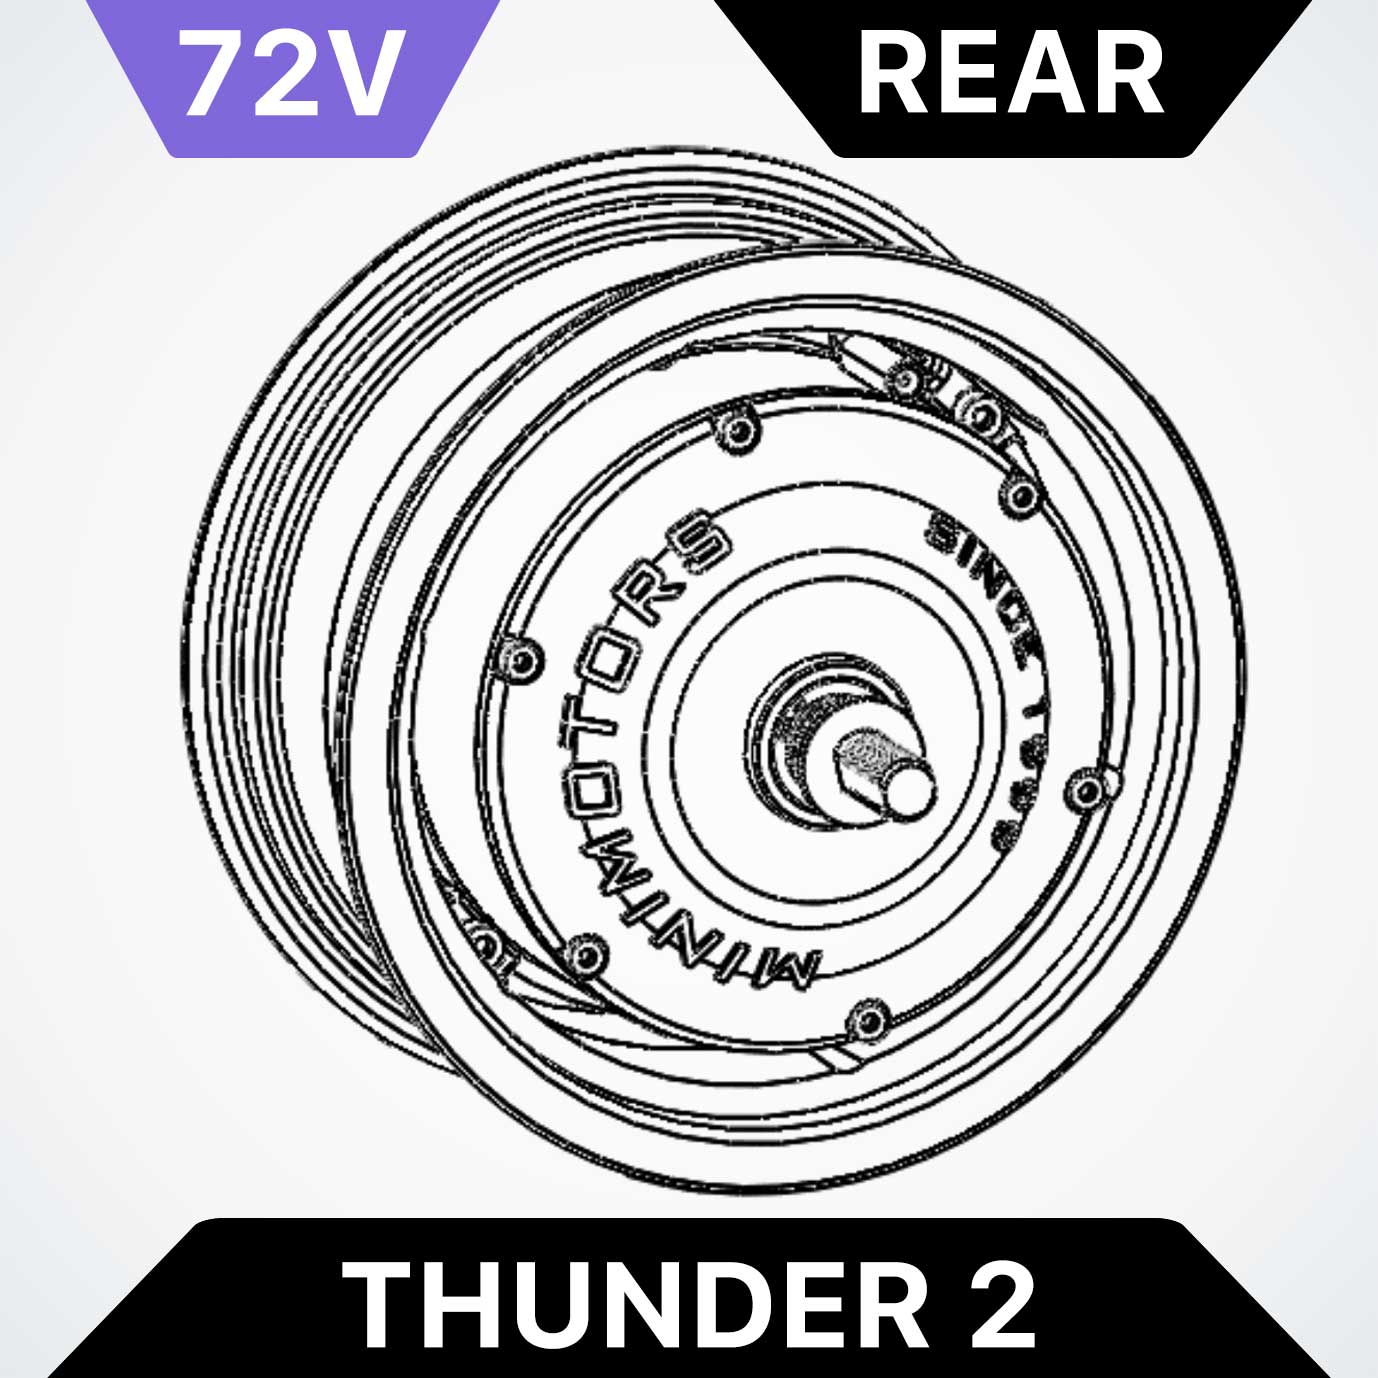 Rear Motor for Dualtron Thunder 2 - 72V